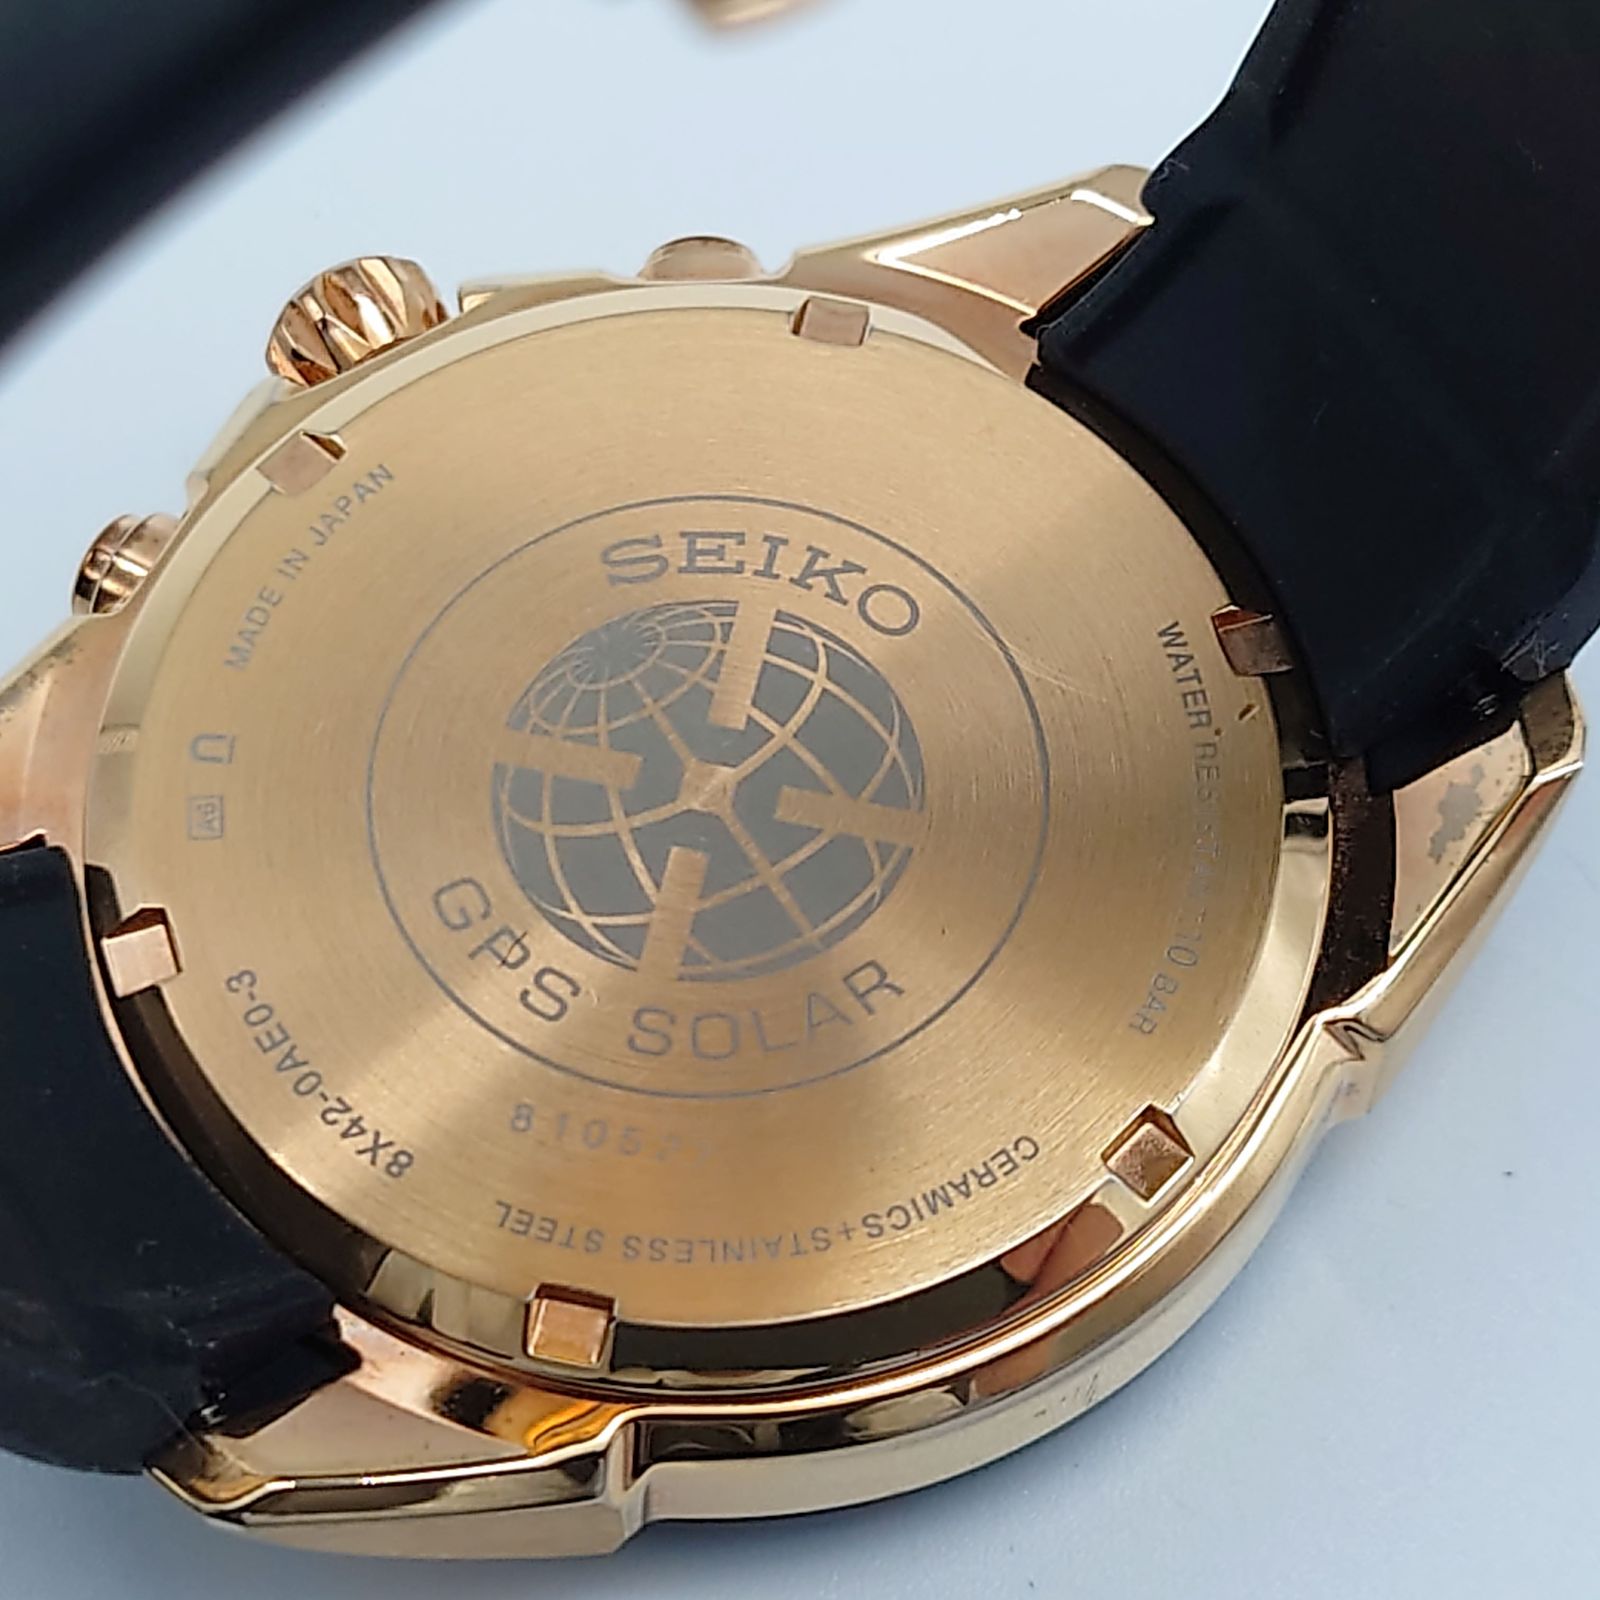 SEIKO セイコー アストロン GPSソーラー 腕時計 ゴールド ブラック文字盤 SS セラミック SBXB153 8X42-0AE0-3 多針 カレンダー 【中古 ABランク】 当店通常価格99